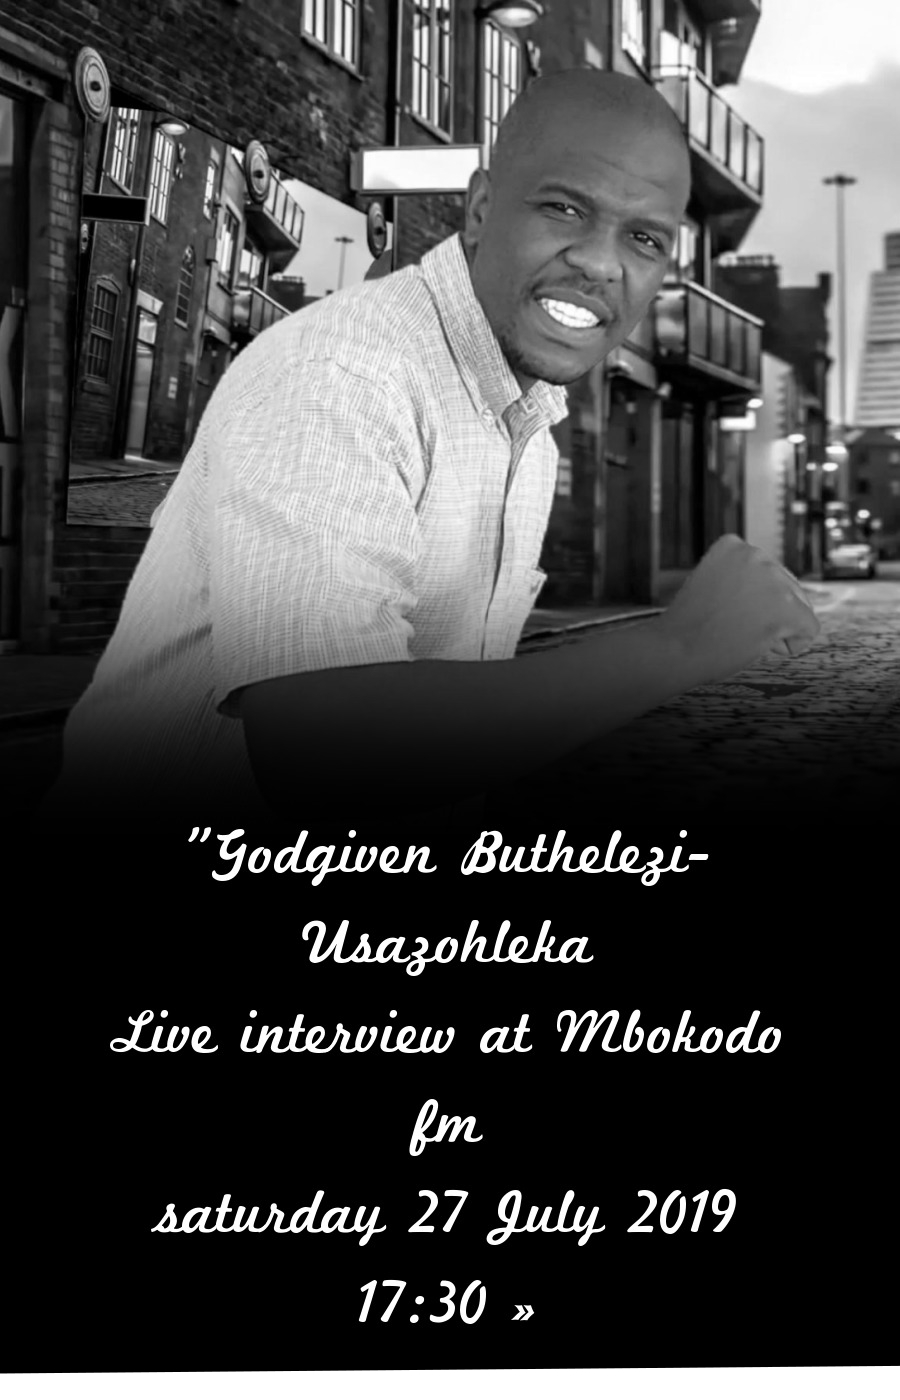 Godgiven Buthelezi at Mbokodo fm